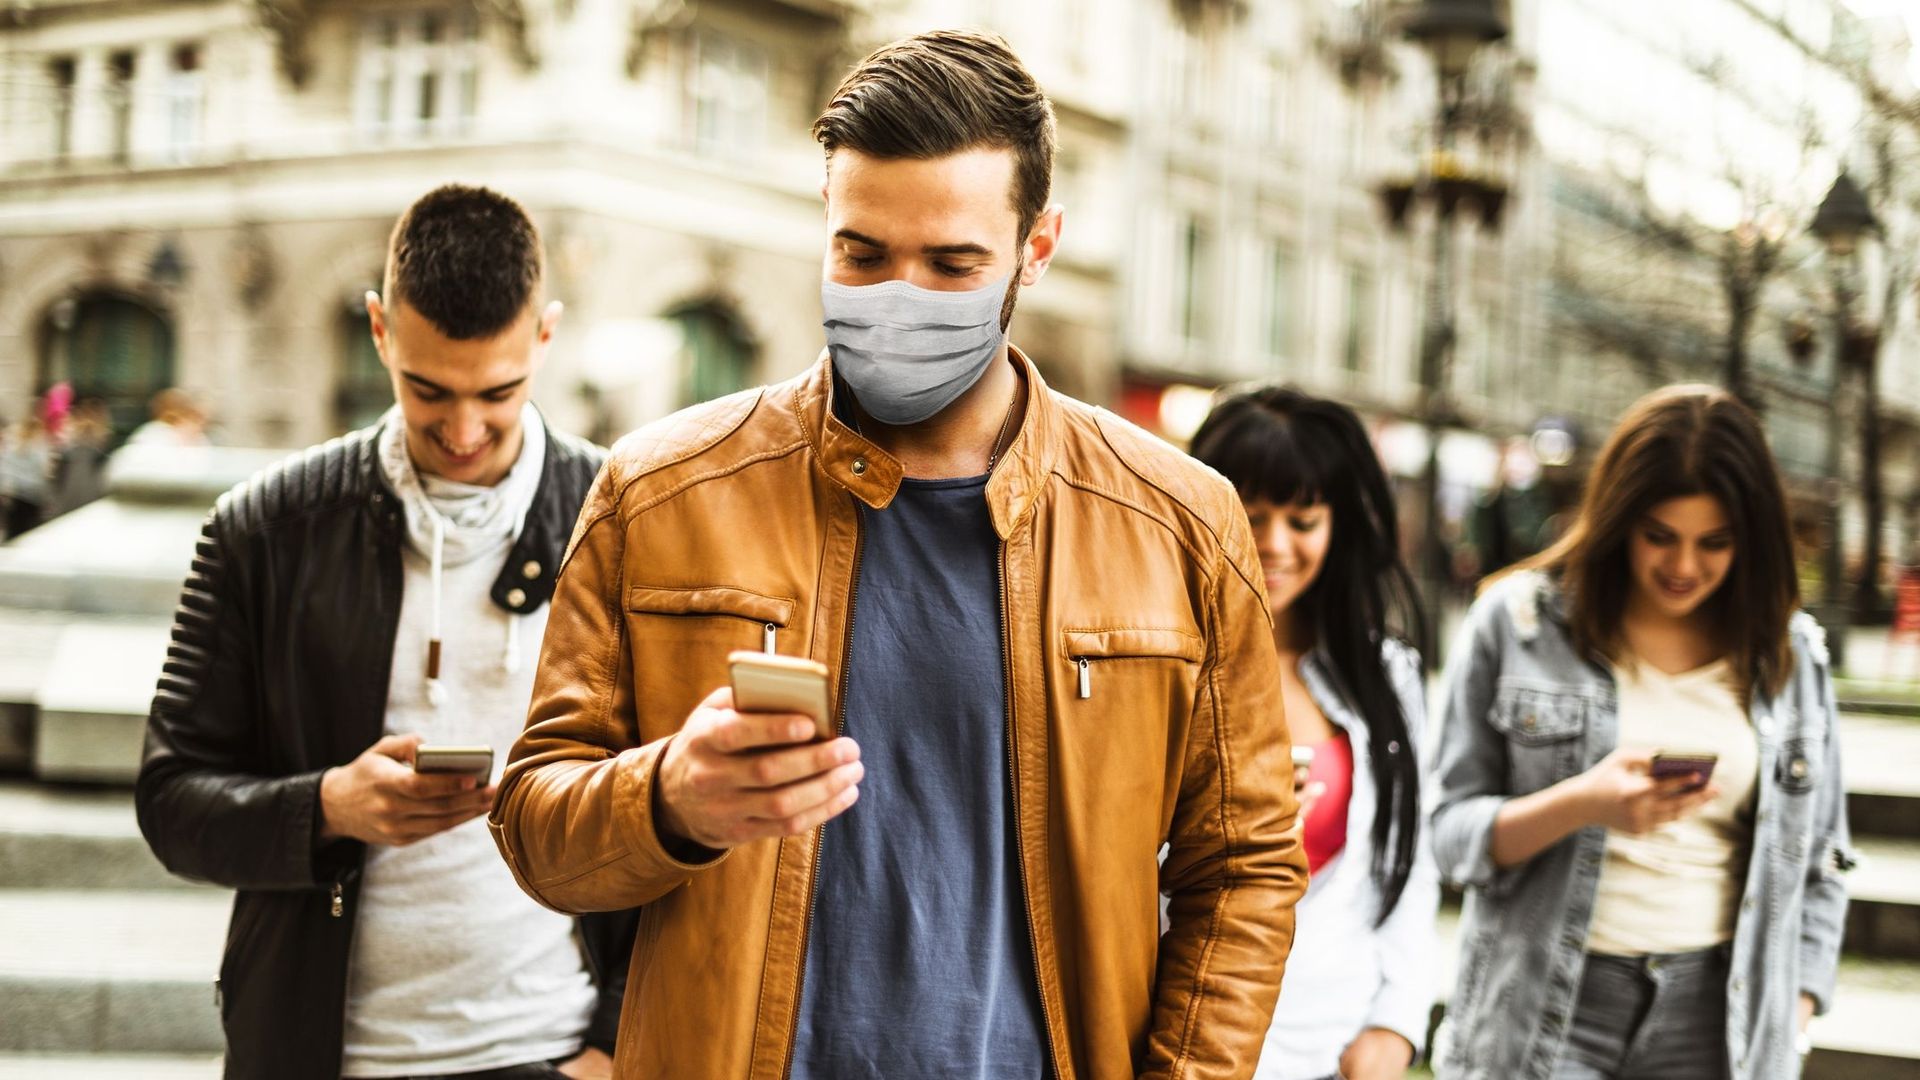 Une dépendance excessive à votre smartphone pourrait nuire à votre santé.